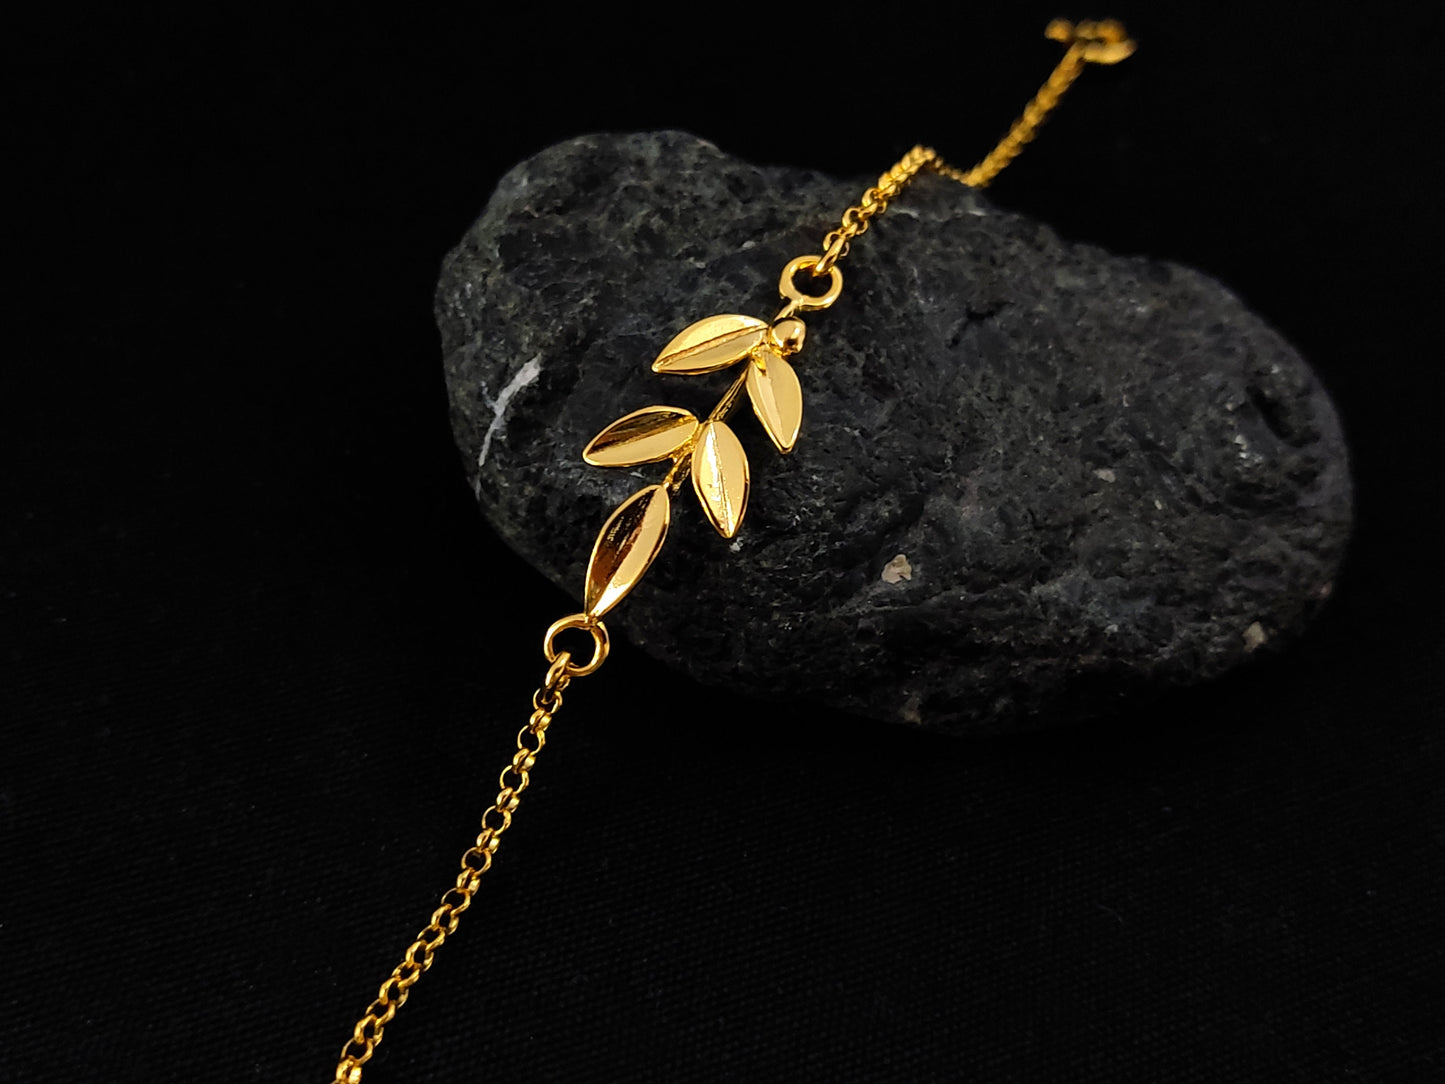 Greek Silver Leaf Bracelet, Goddess Athena Olive Leaves Gold Plated Fine Adjustable Bracelet, Griechischer Silber Armband, Greek Jewelry